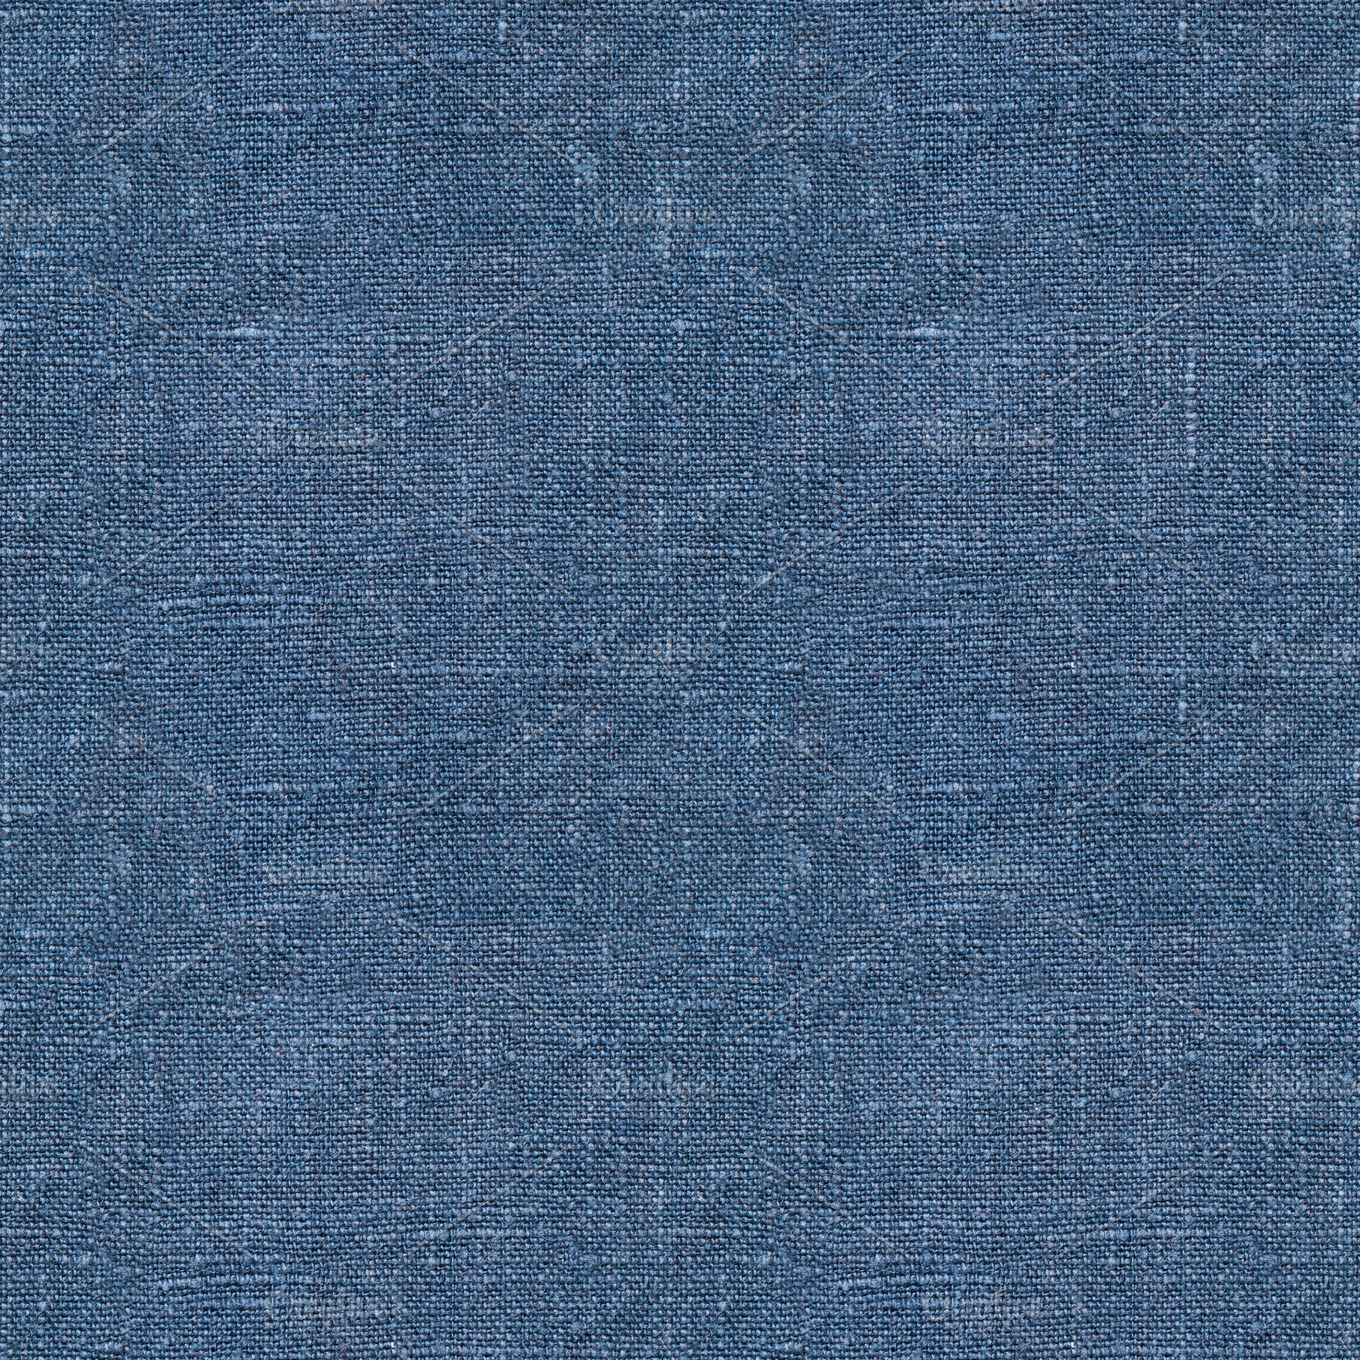 Blue linen seamless texture ~ Abstract Photos ~ Creative Market